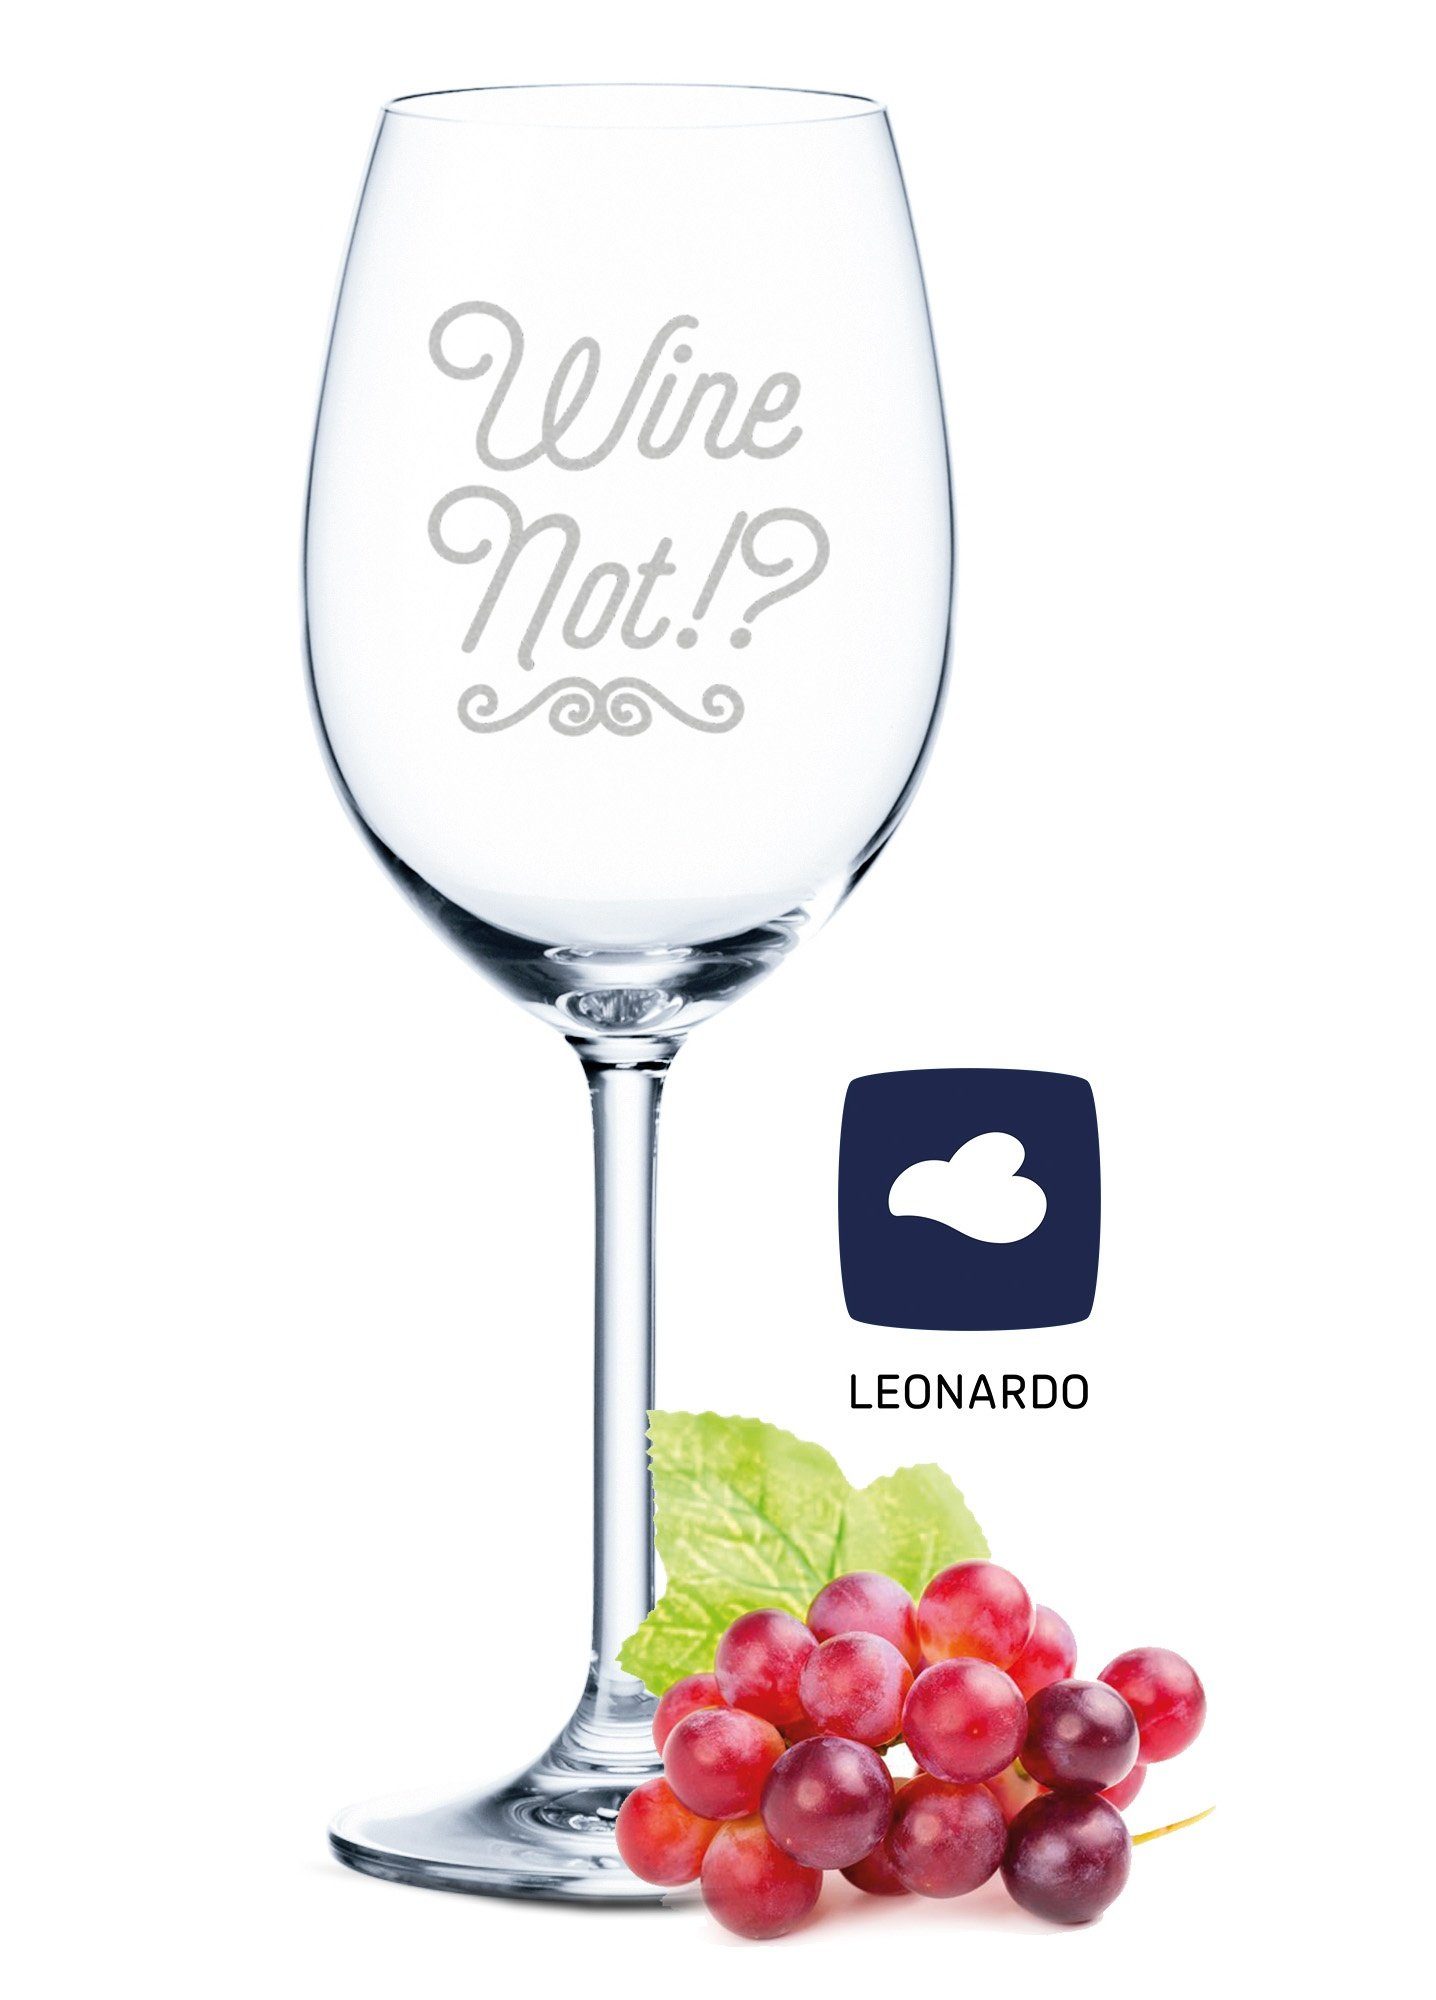 GRAVURZEILE Rotweinglas Leonardo Weinglas mit Gravur - Wine Not - Lustige Geschenke, Glas, graviertes Geschenk für Partner, Freunde & Familie